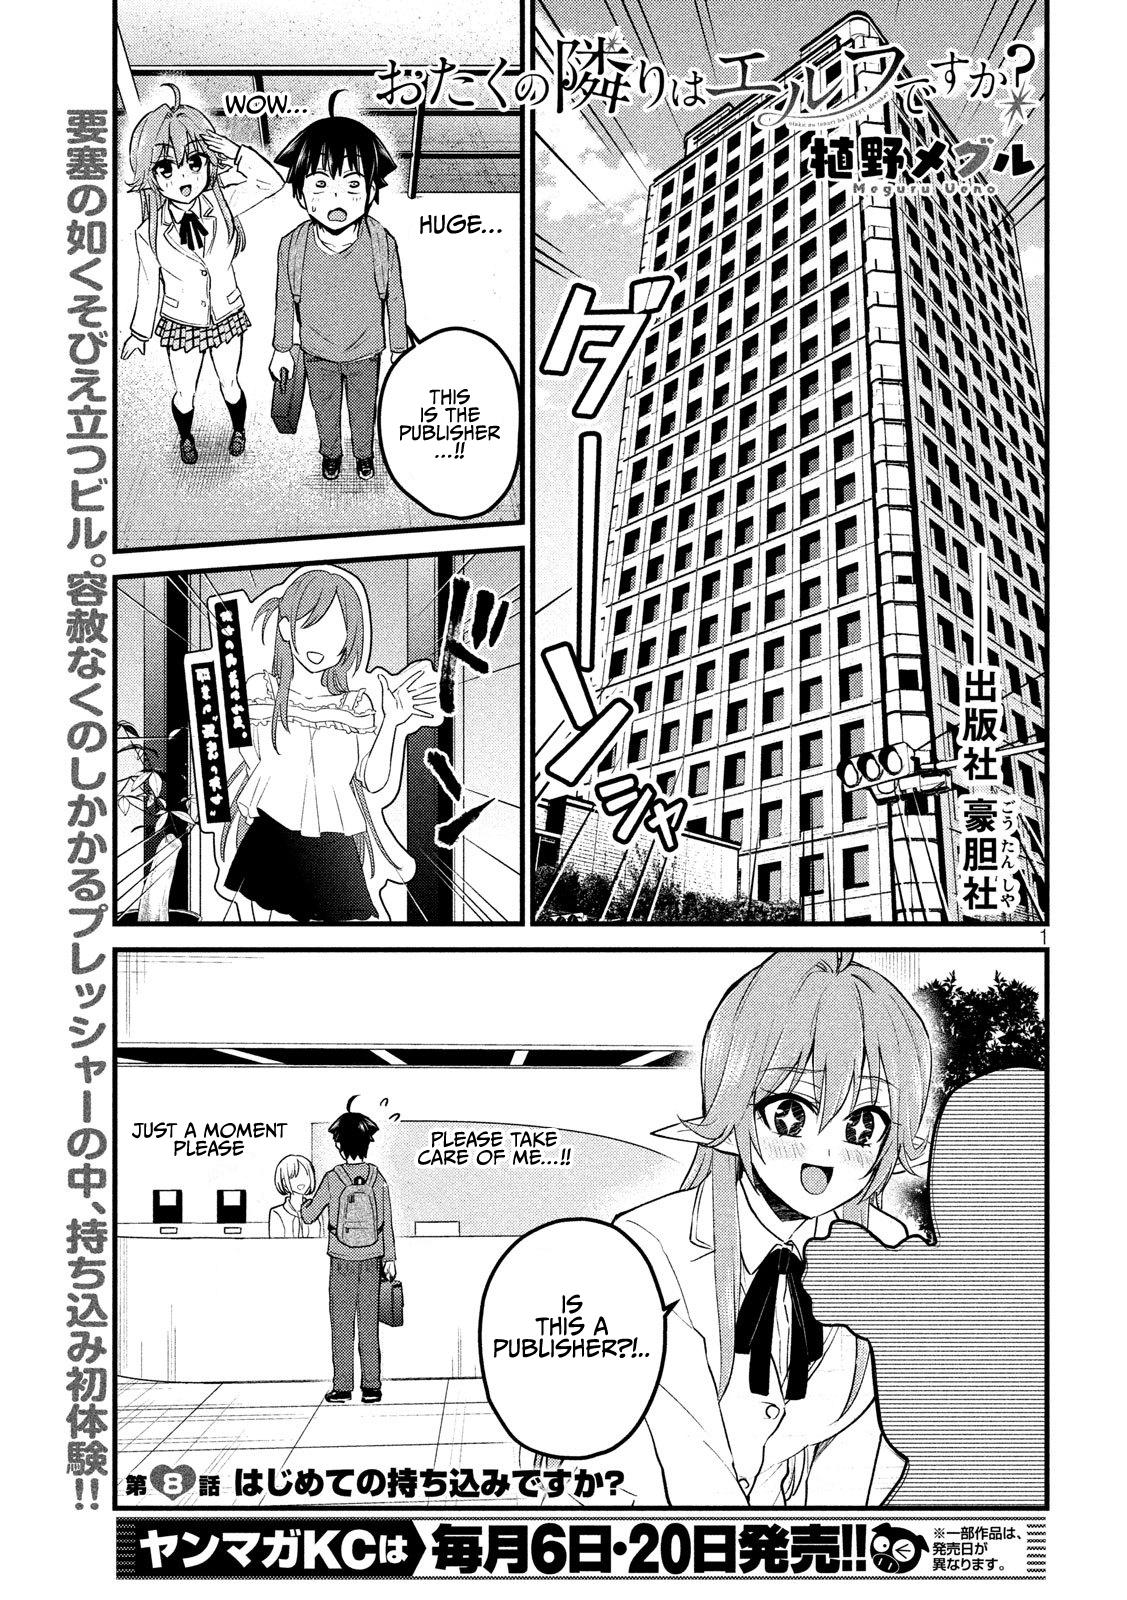 Otaku No Tonari Wa Erufu Desuka? - 8 page 1